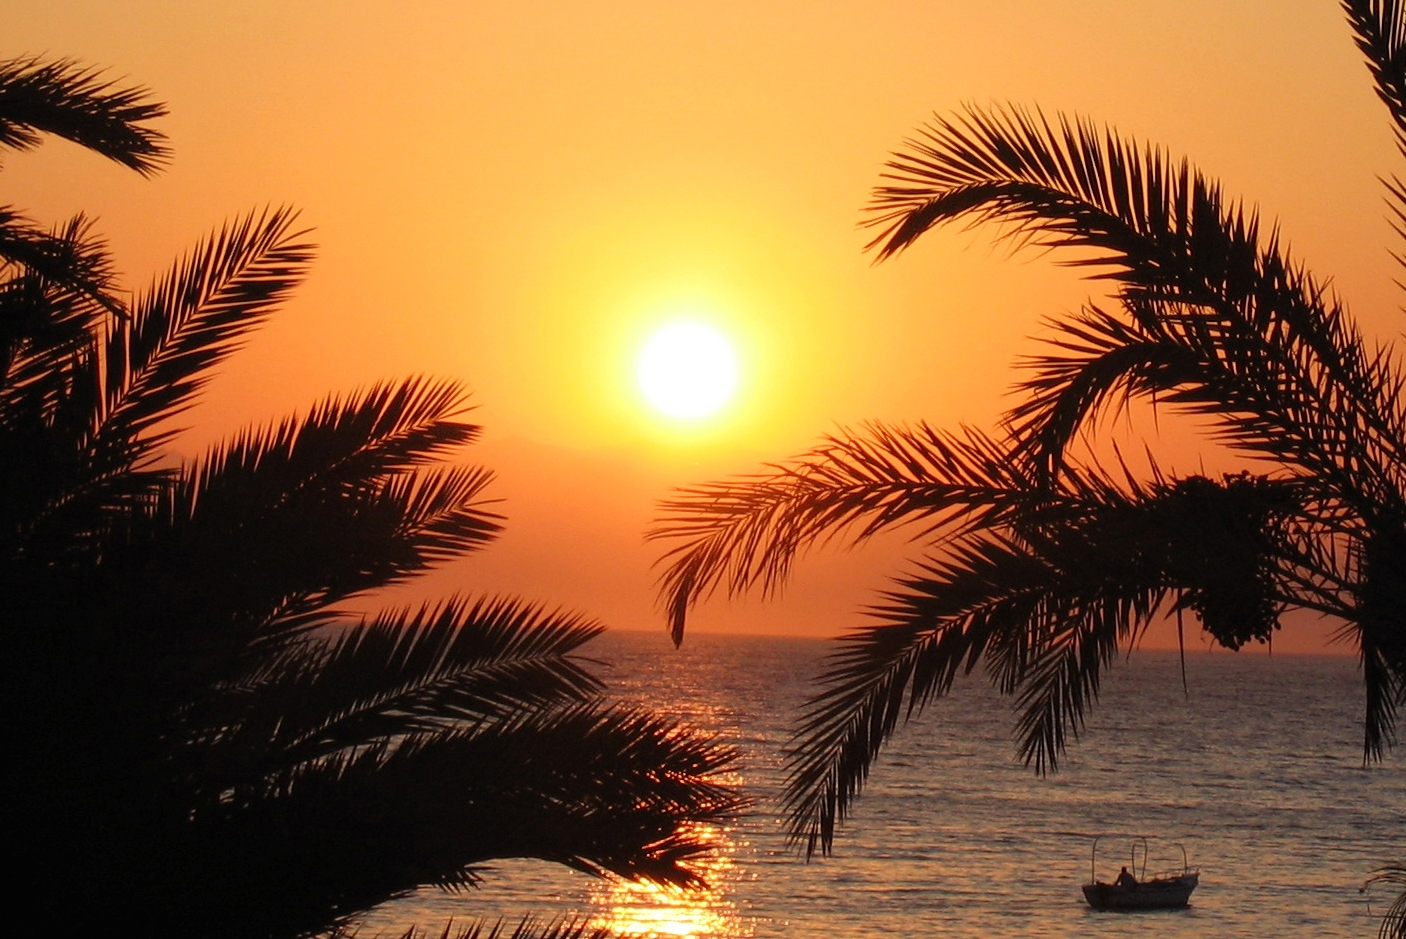 Dahab_Red Sea_Egypt_Sinai_Sunset - Kopi.JPG